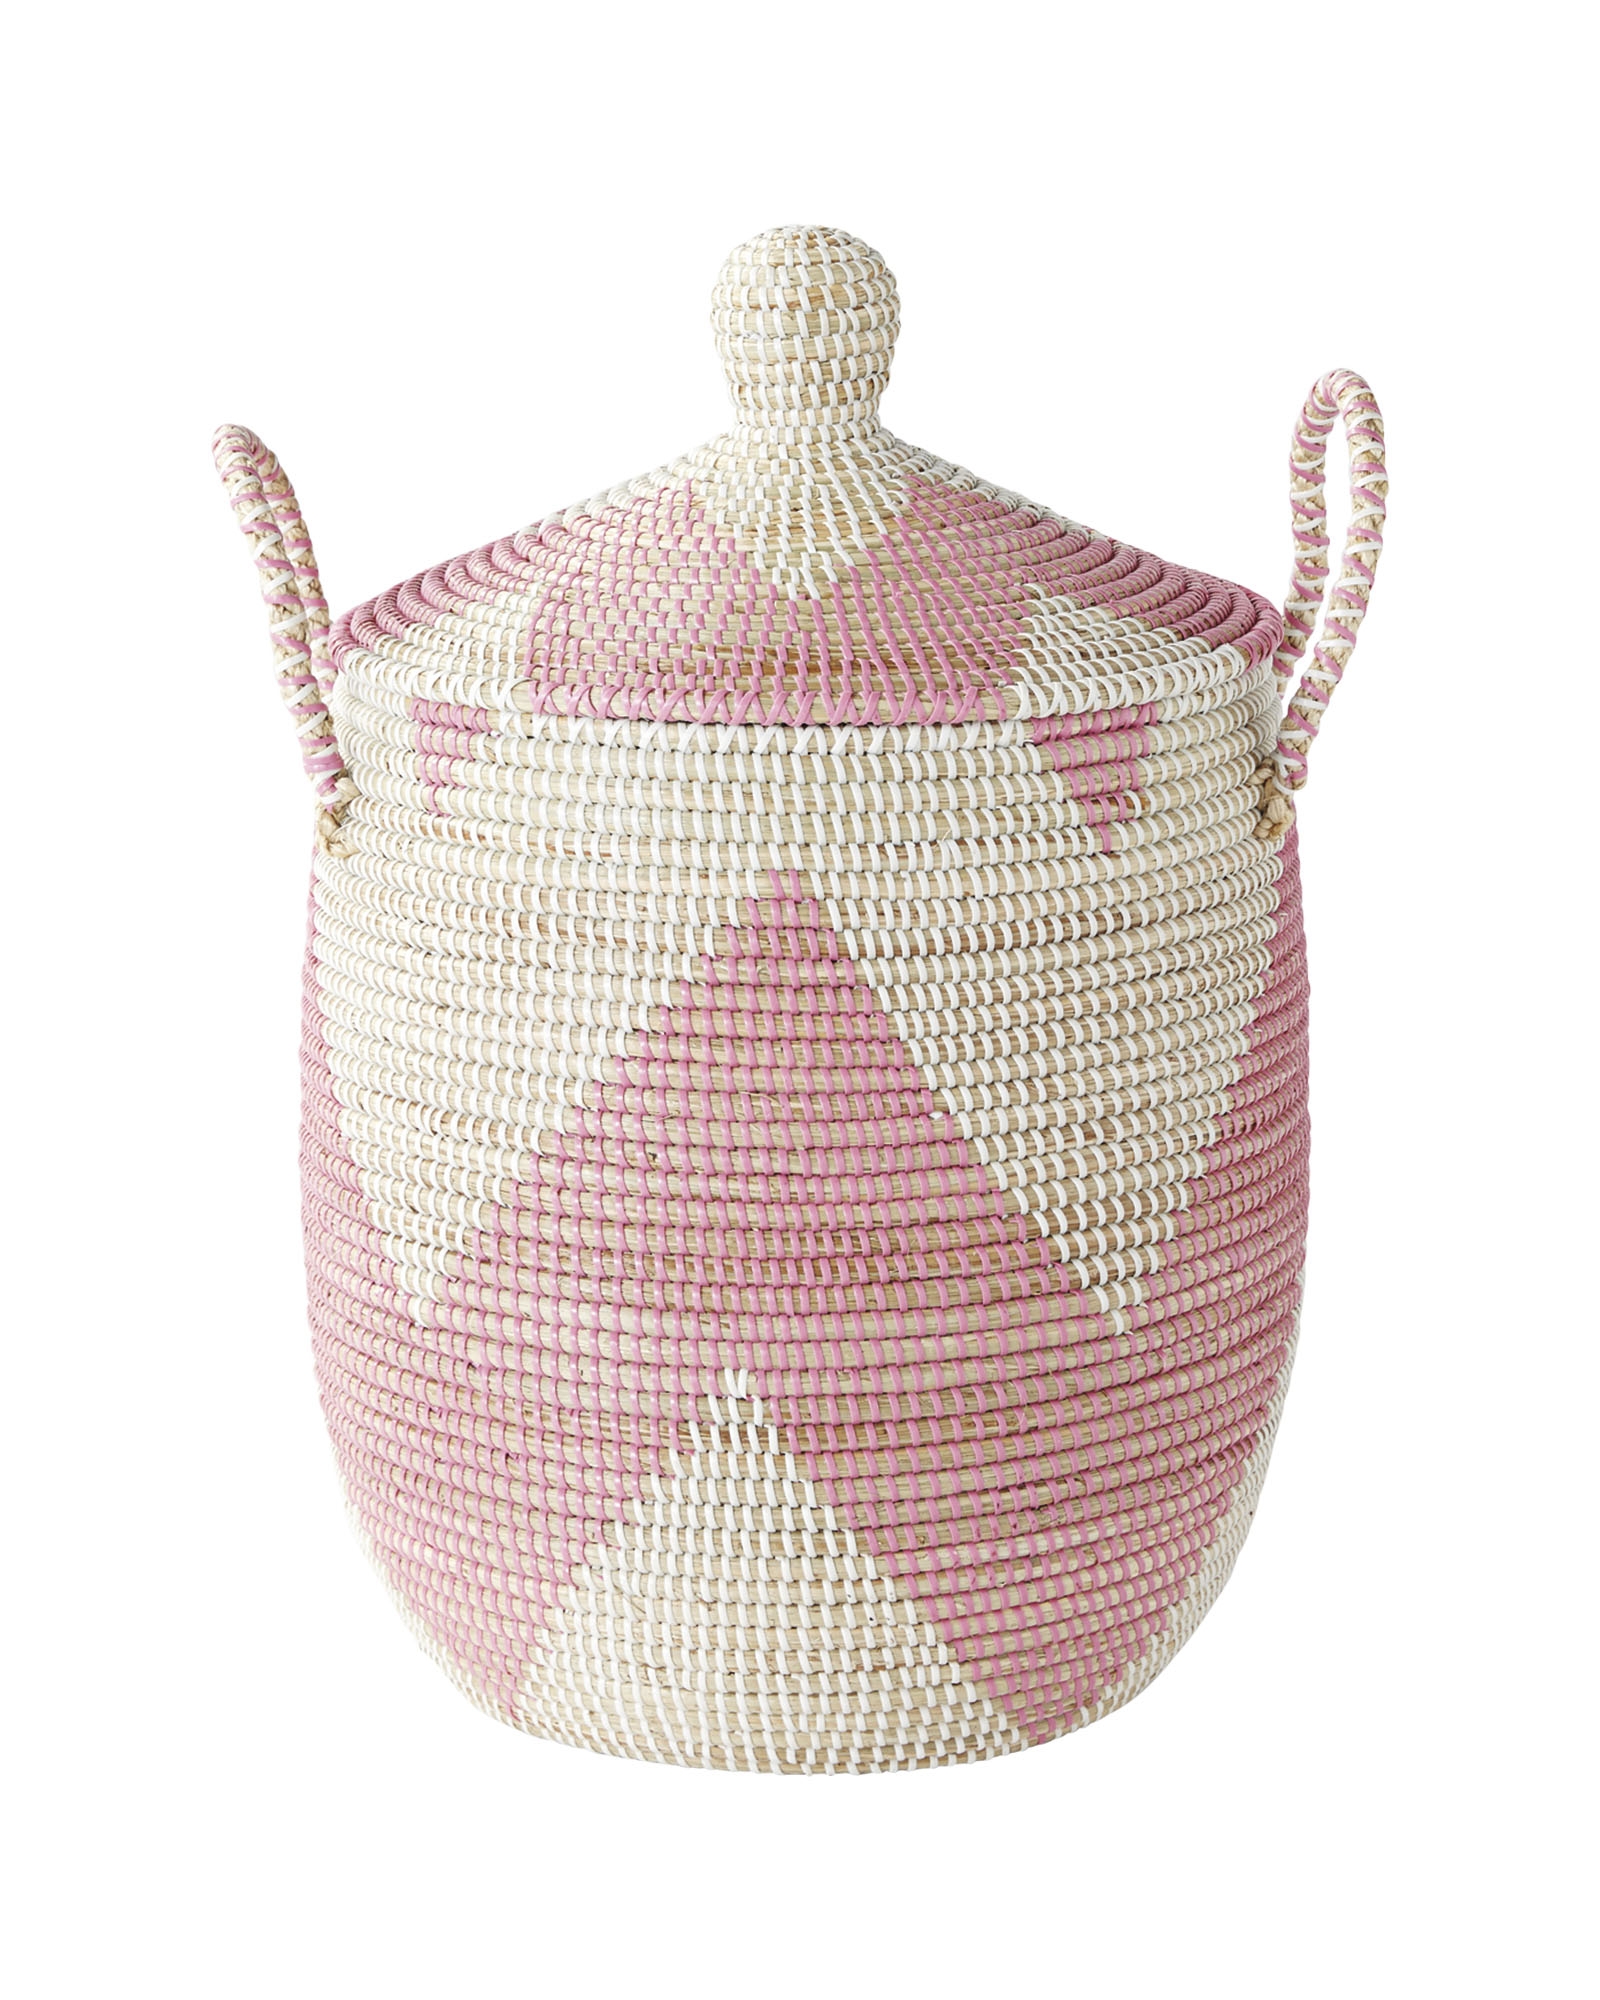 La Jolla Baskets-Small-Pink - Image 0